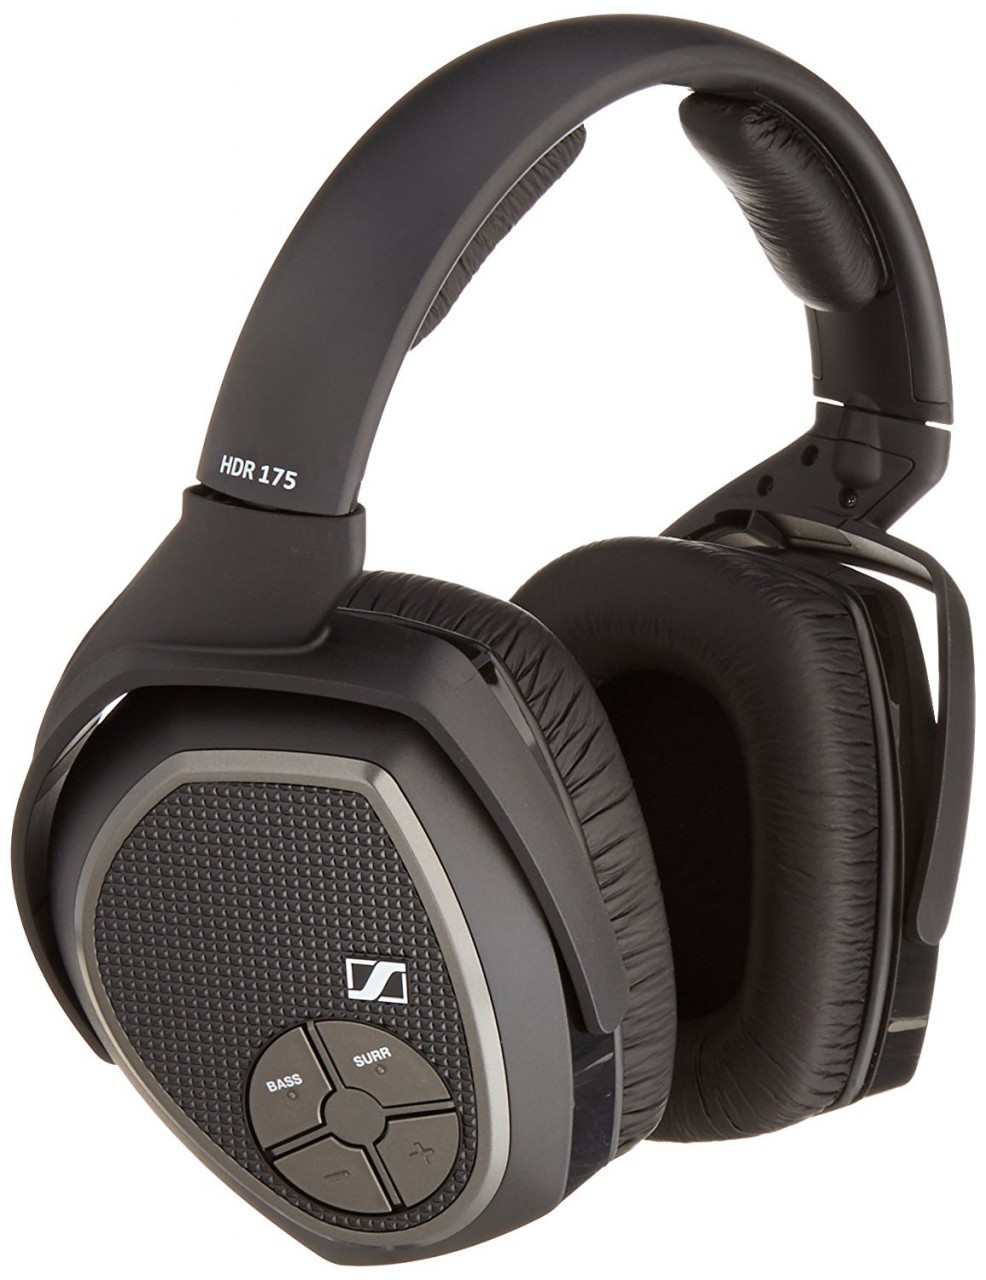 Sennheiser RS 175 headphone